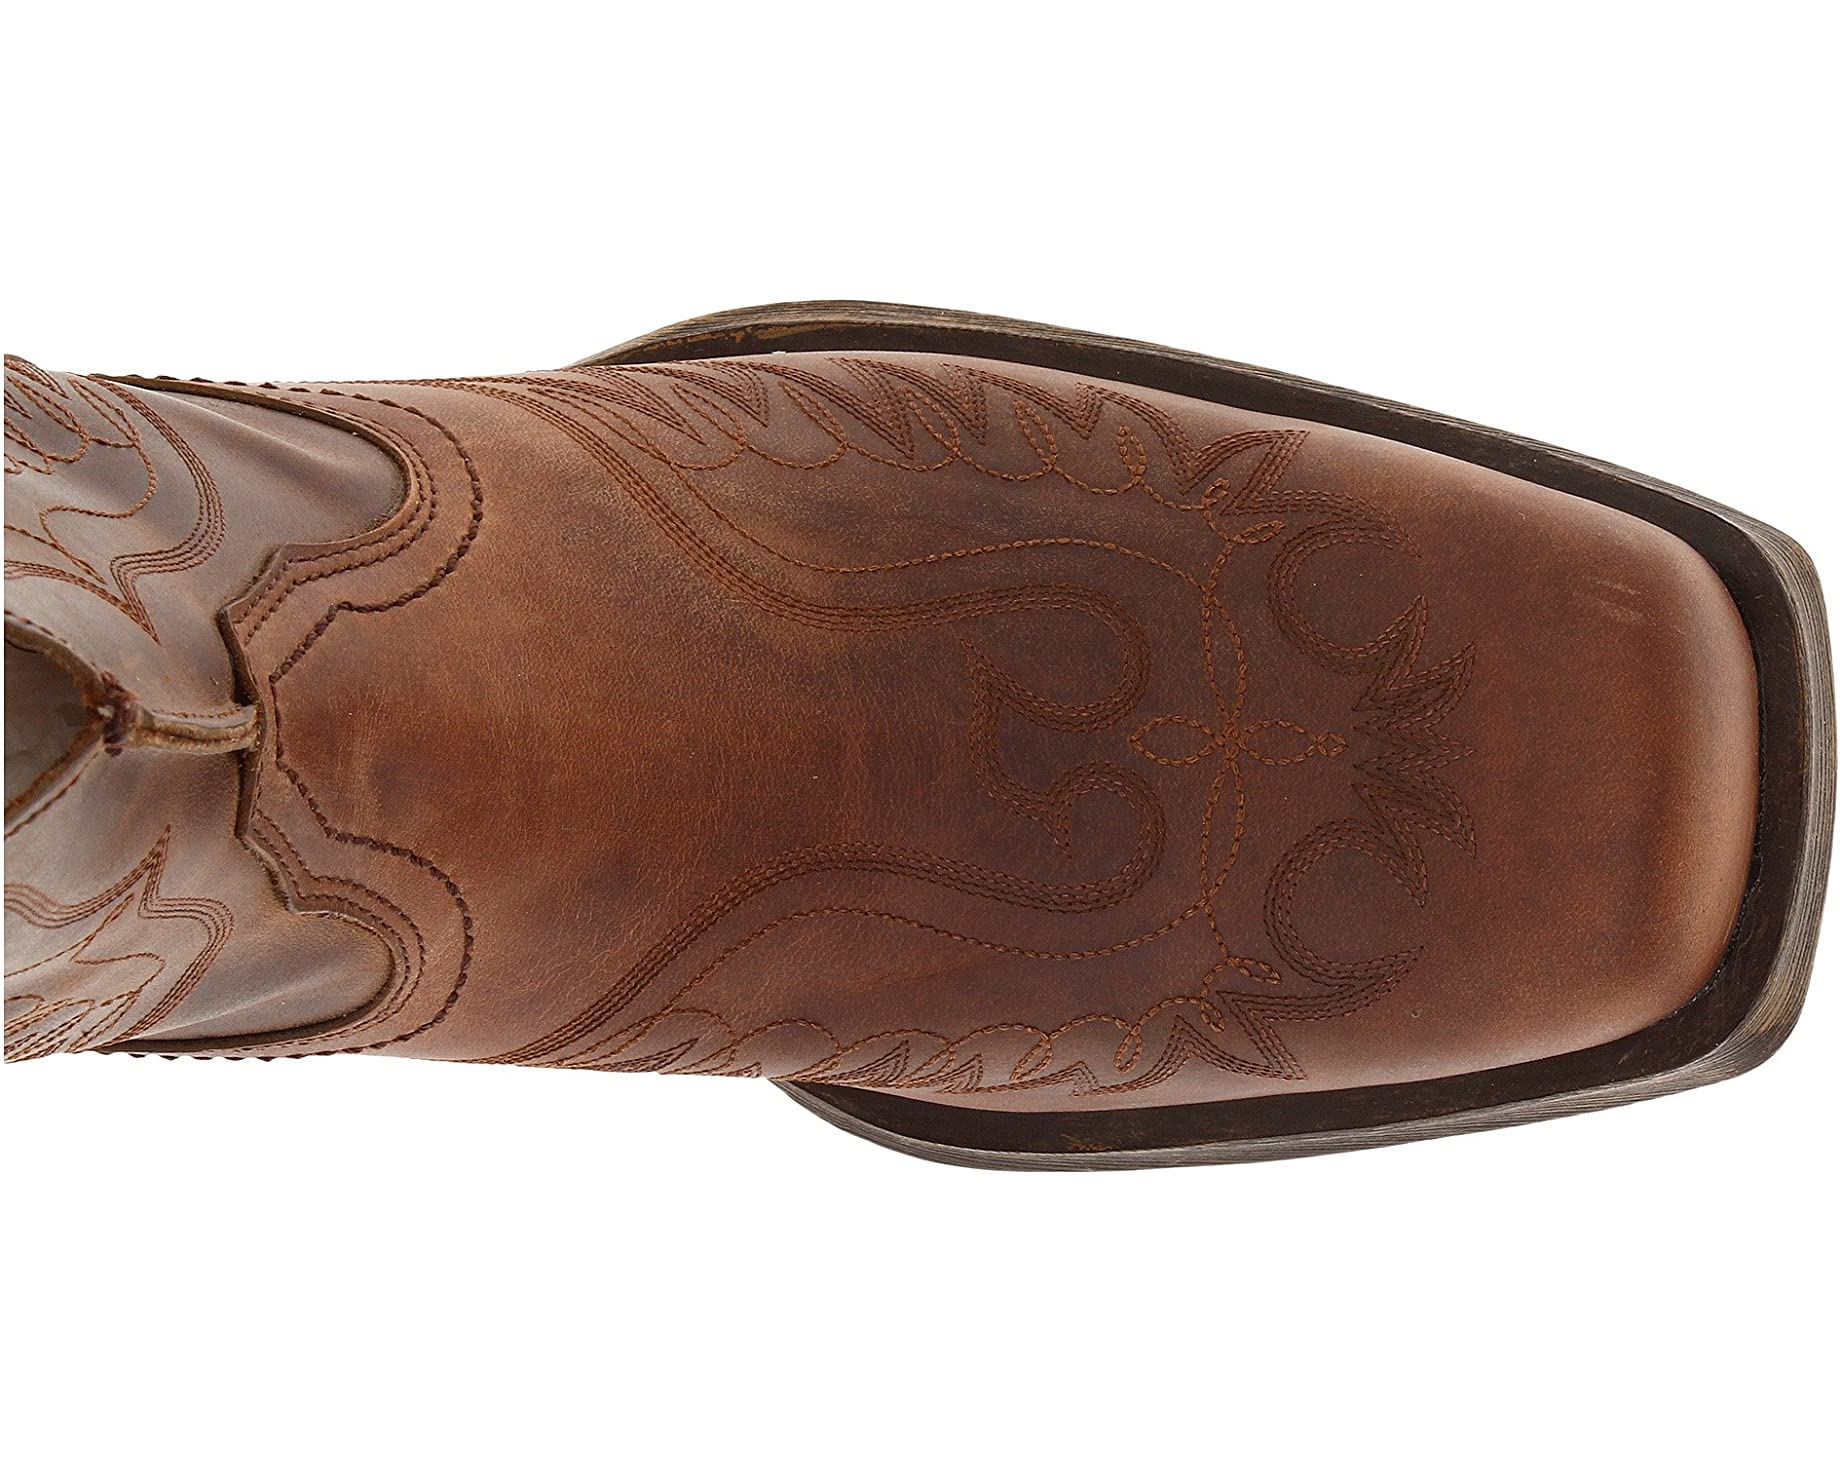 Ботинки Rambler Phoenix Ariat, коричневый